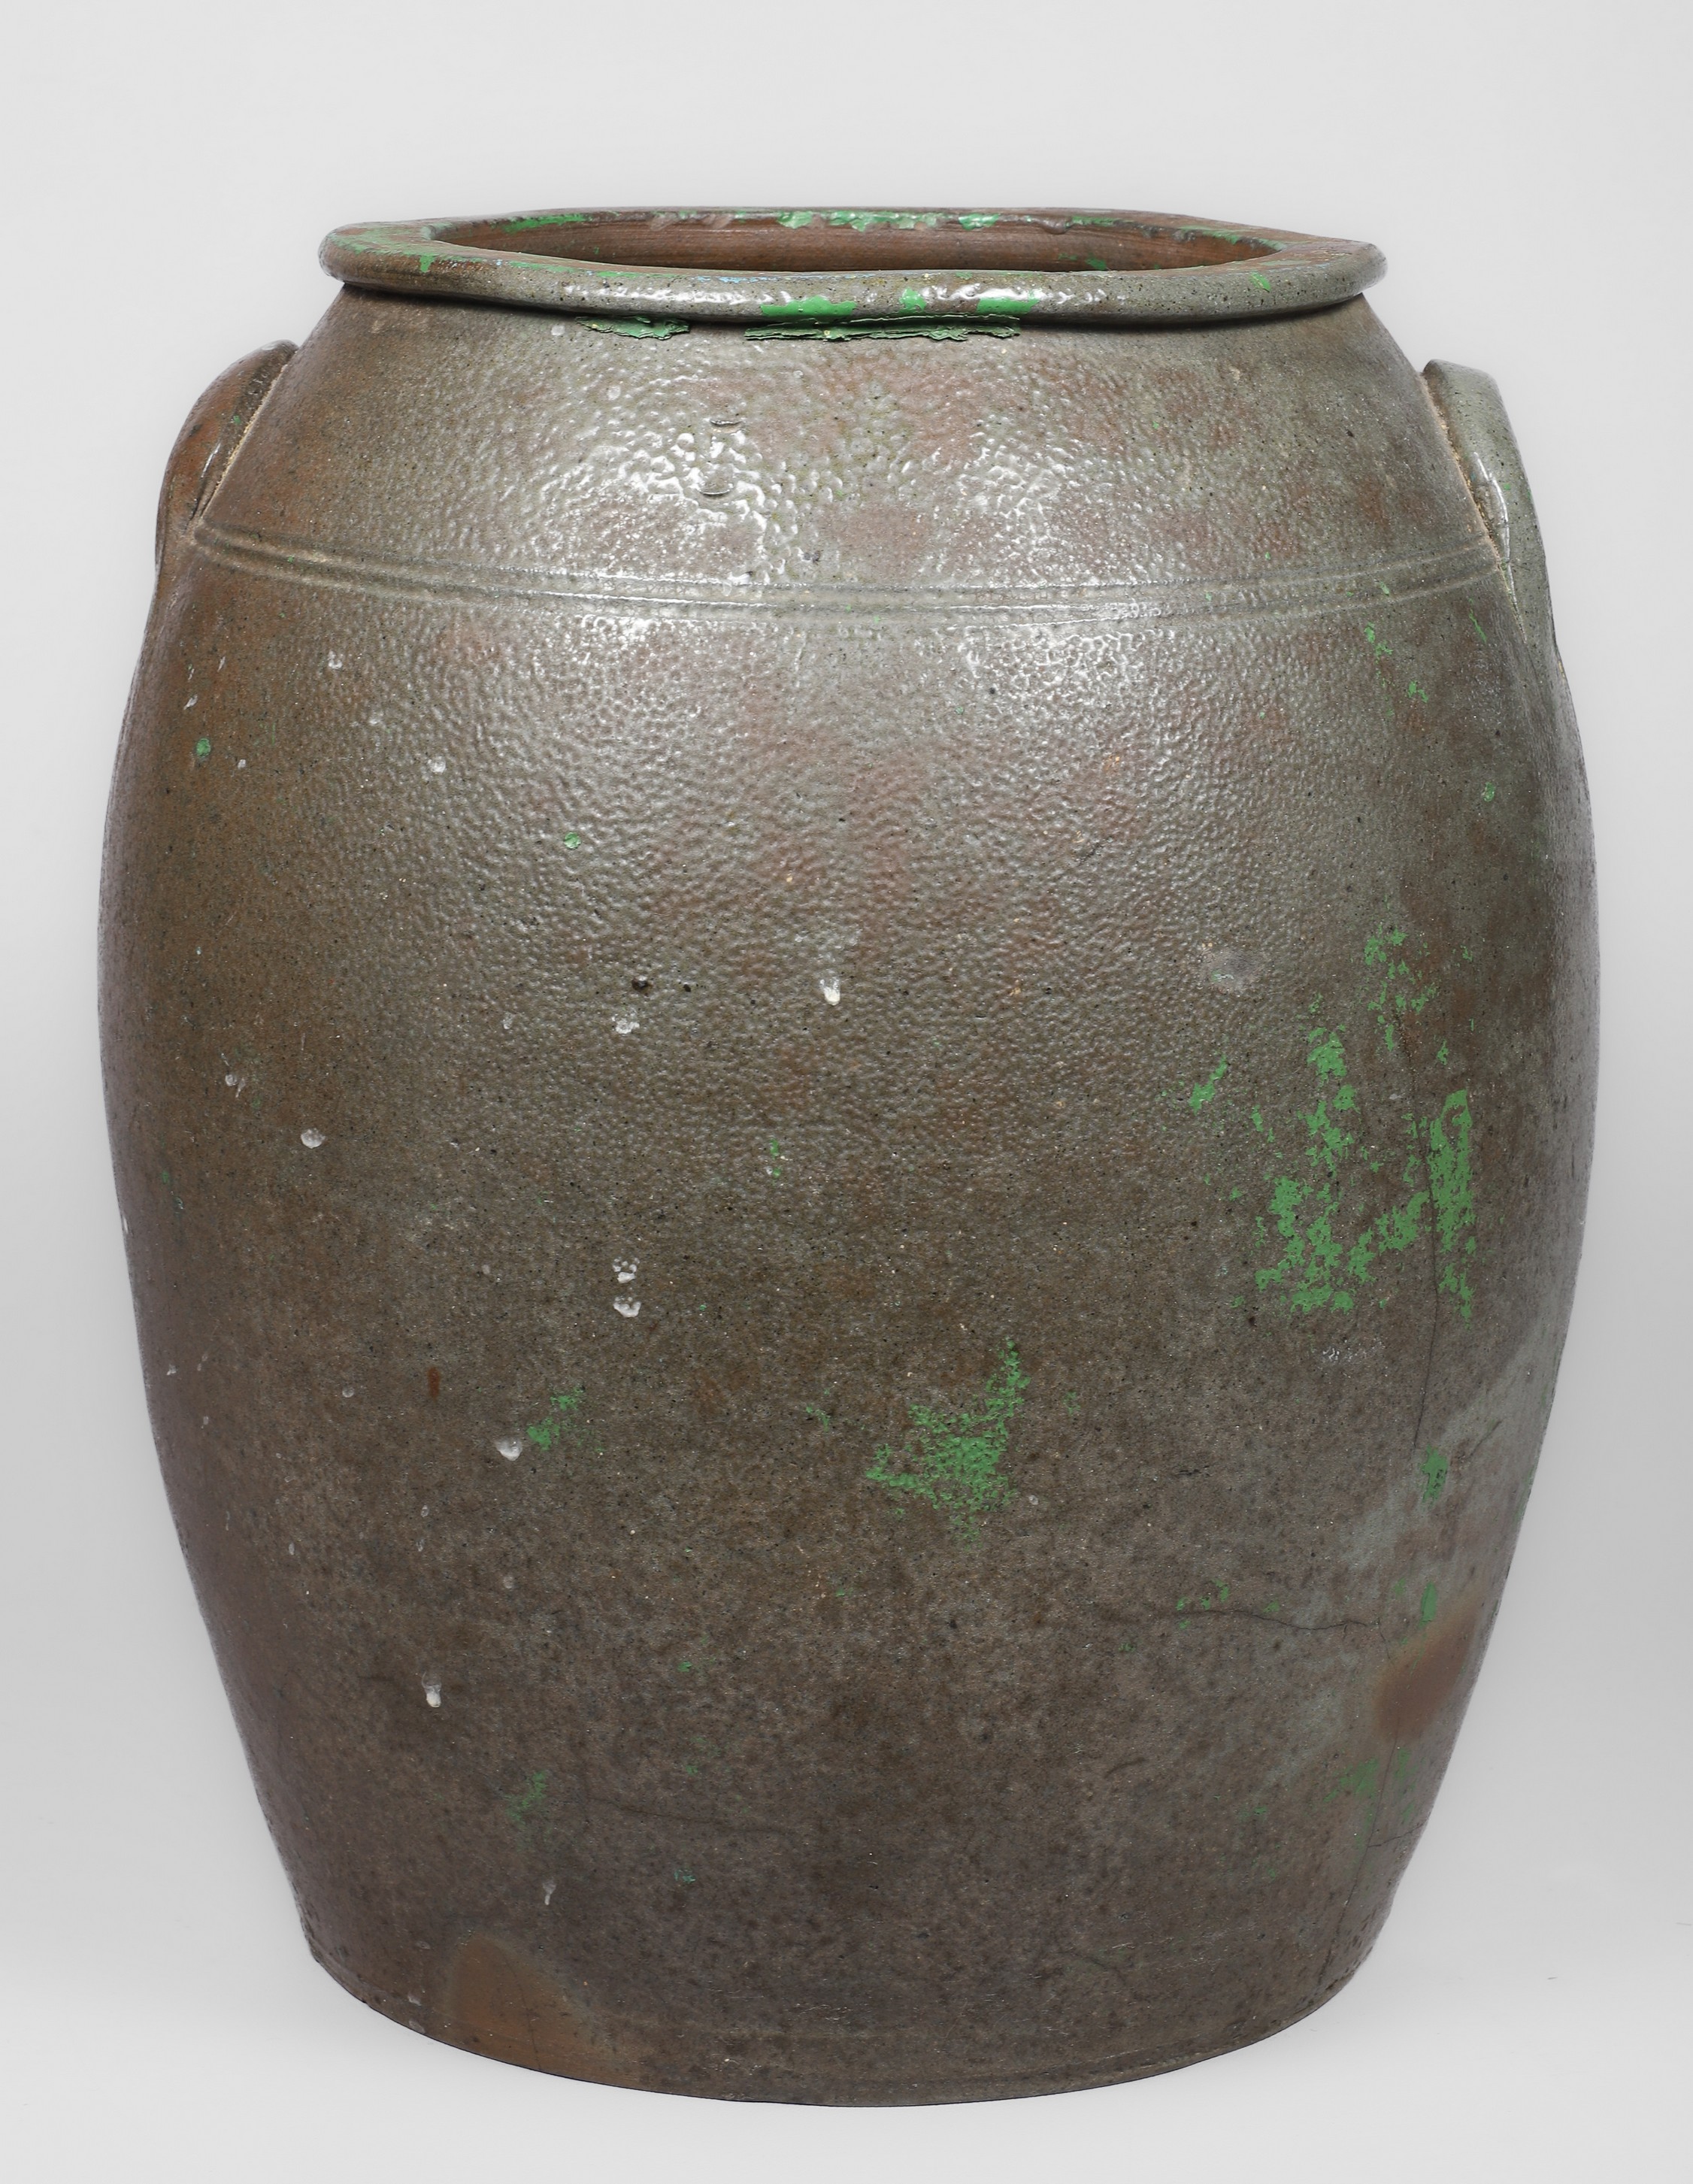 5-Gallon stoneware crock, attributed